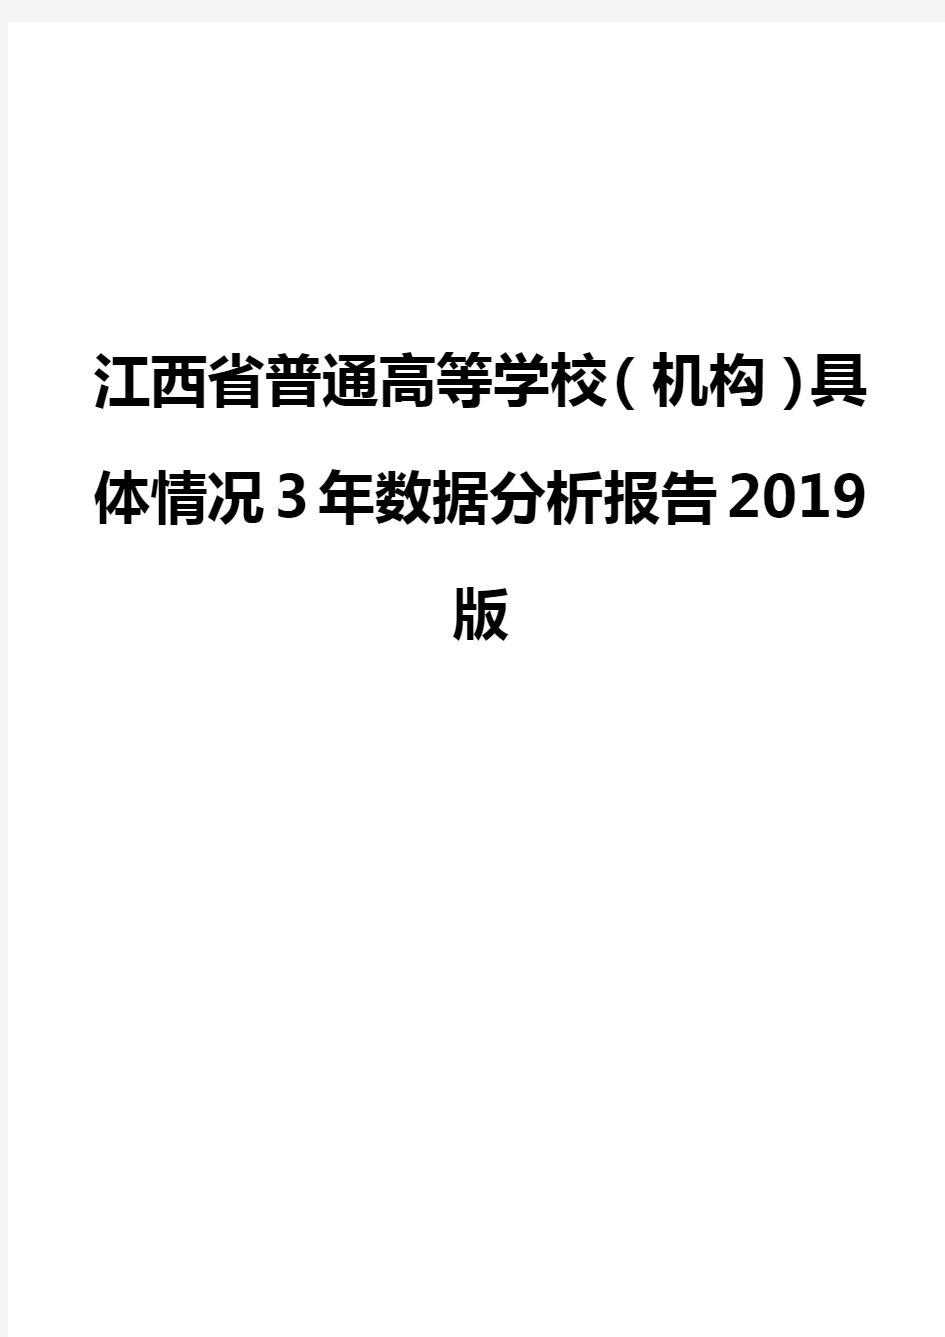 江西省普通高等学校(机构)具体情况3年数据分析报告2019版